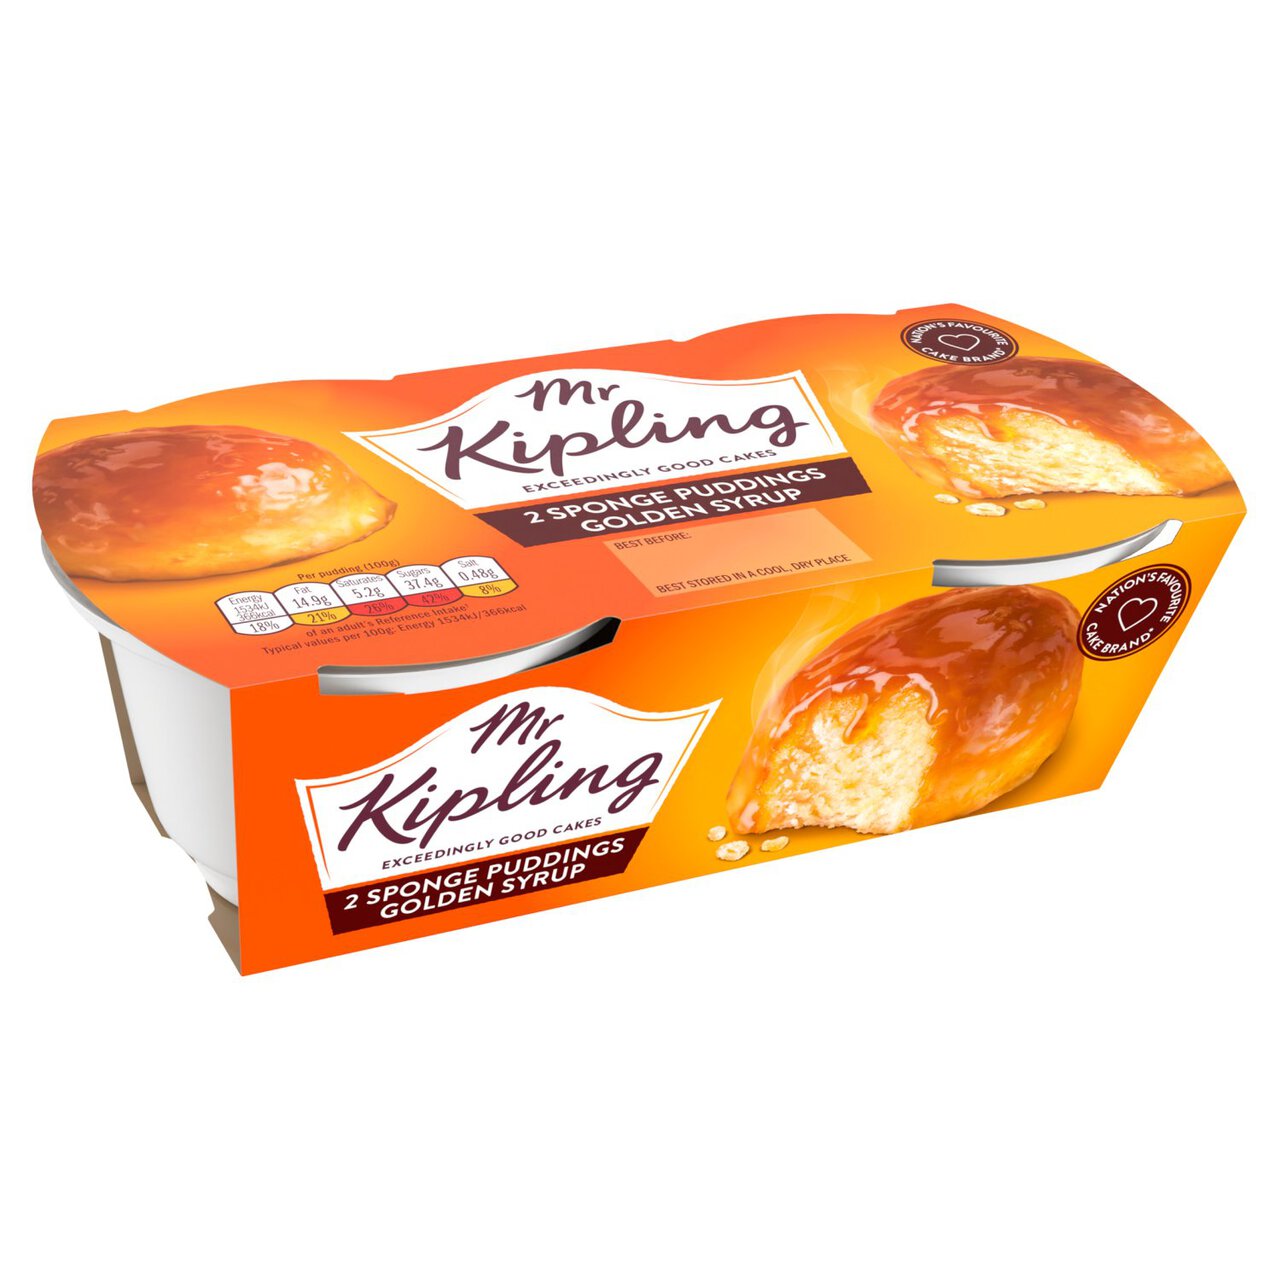 Mr Kipling Golden Syrup Sponge Puddings 2 per pack